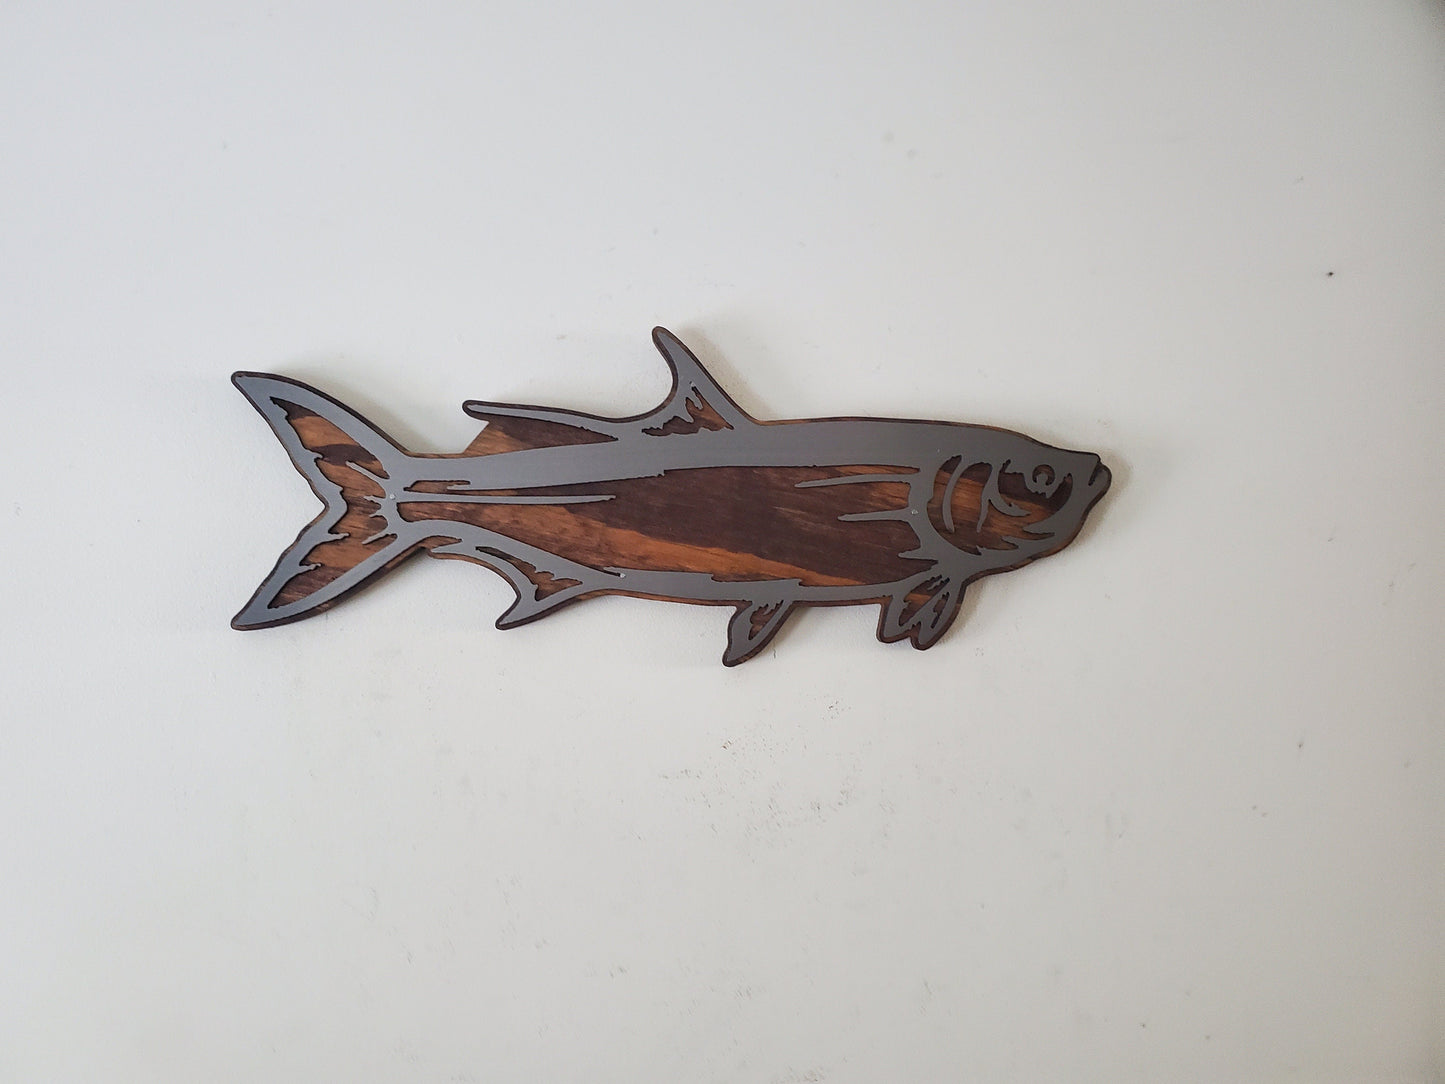 Tarpon Fish Metal Art on Wood